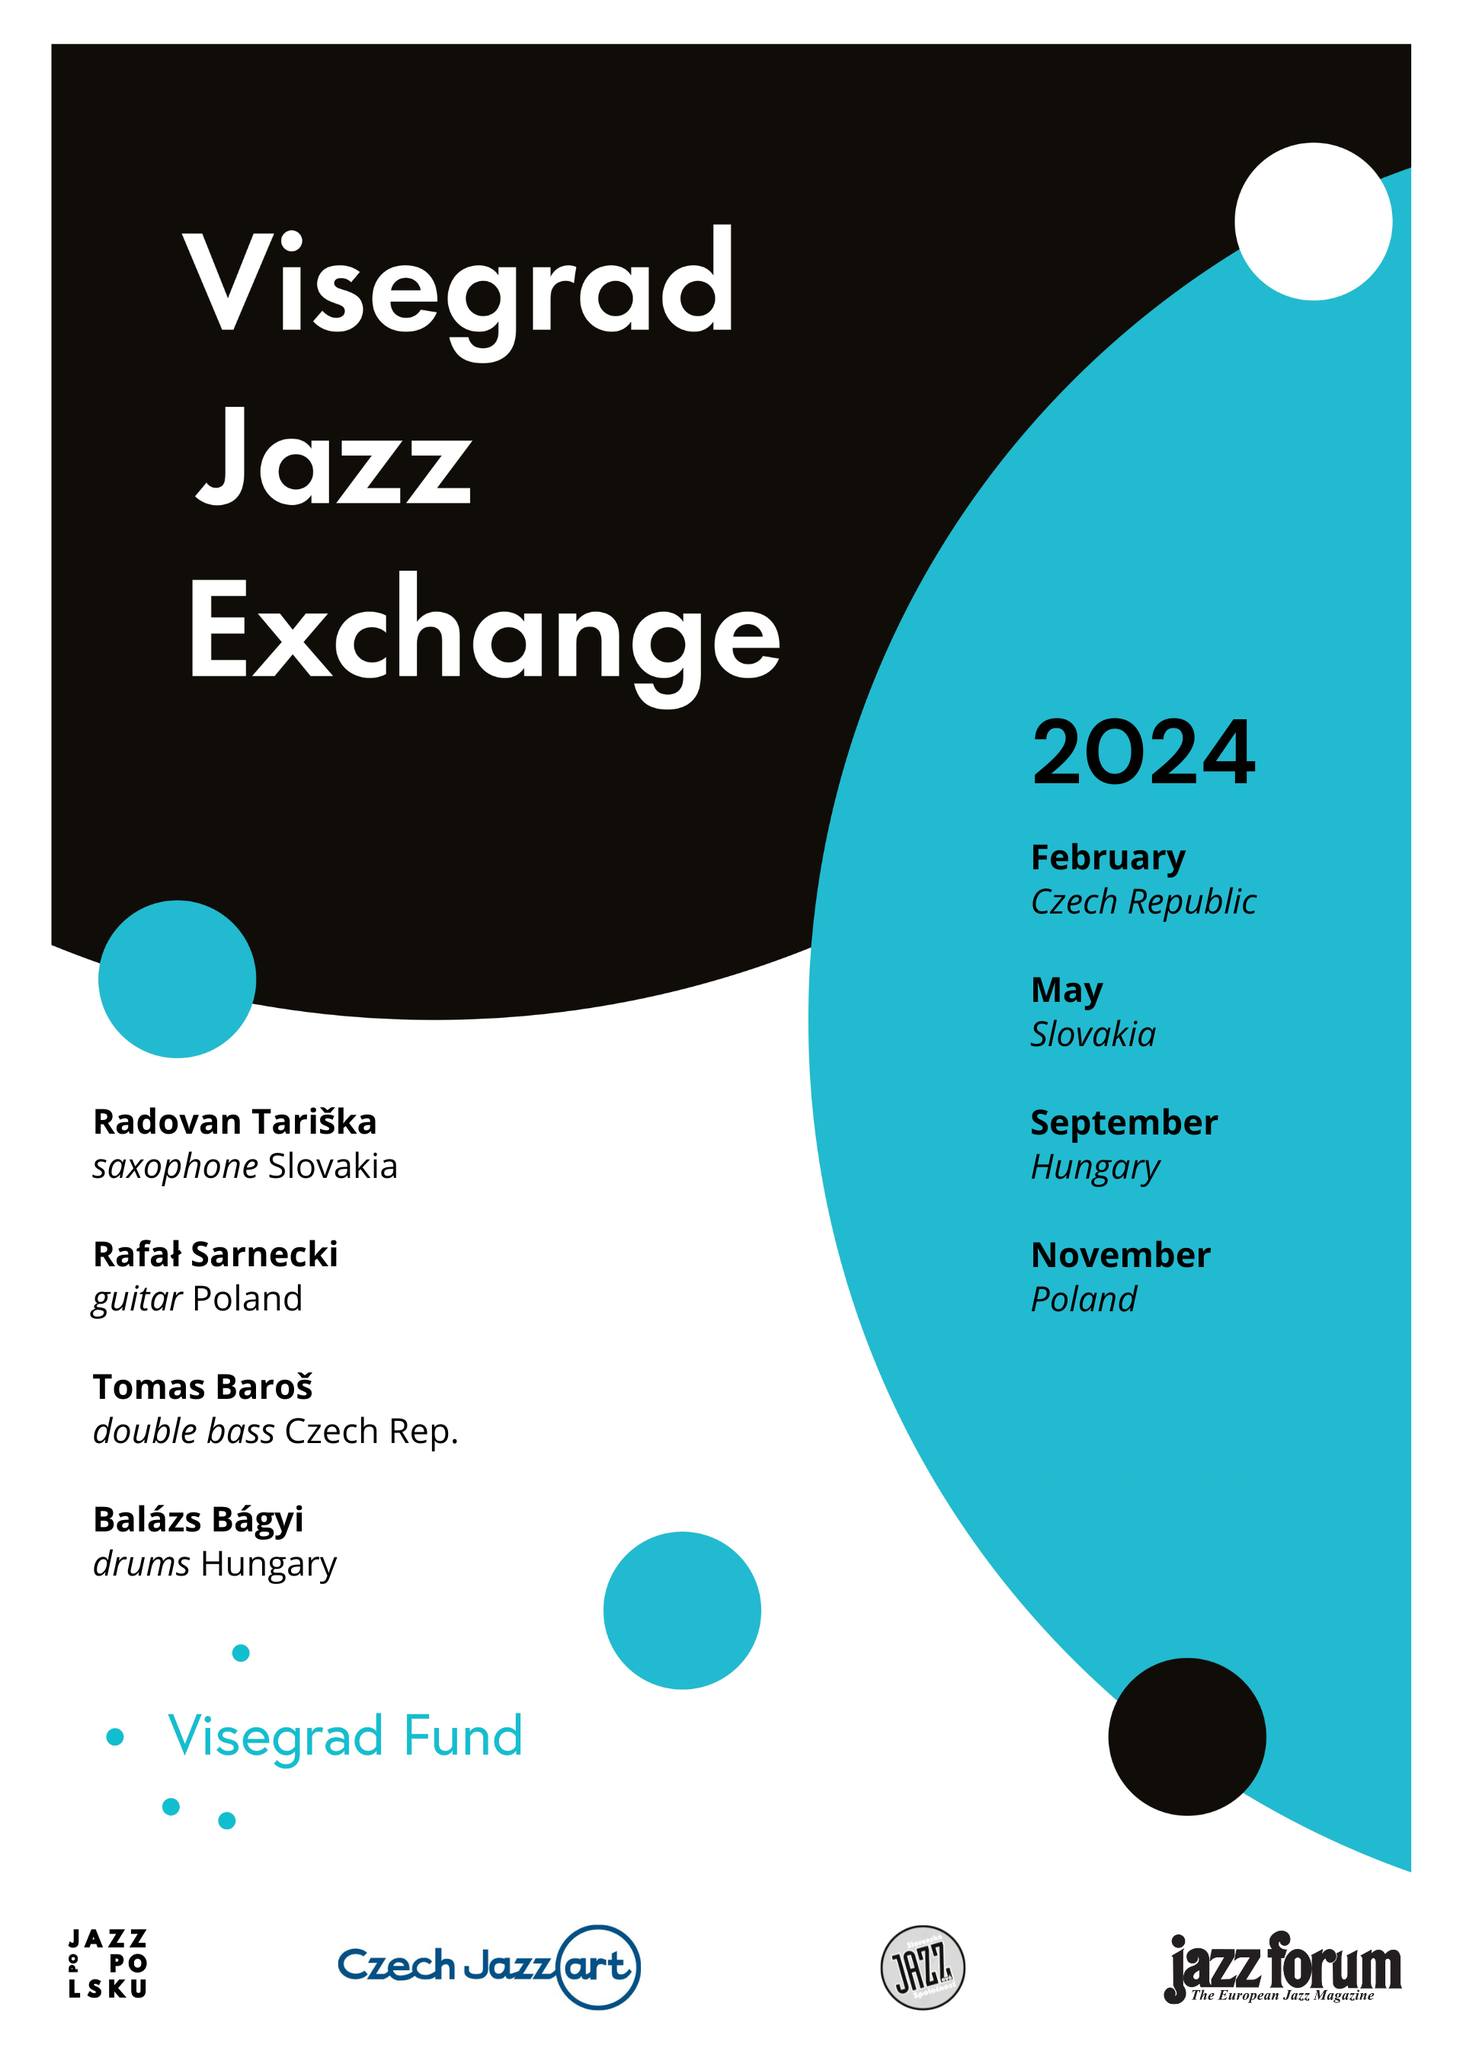 Visegrad Jazz Exchange Project